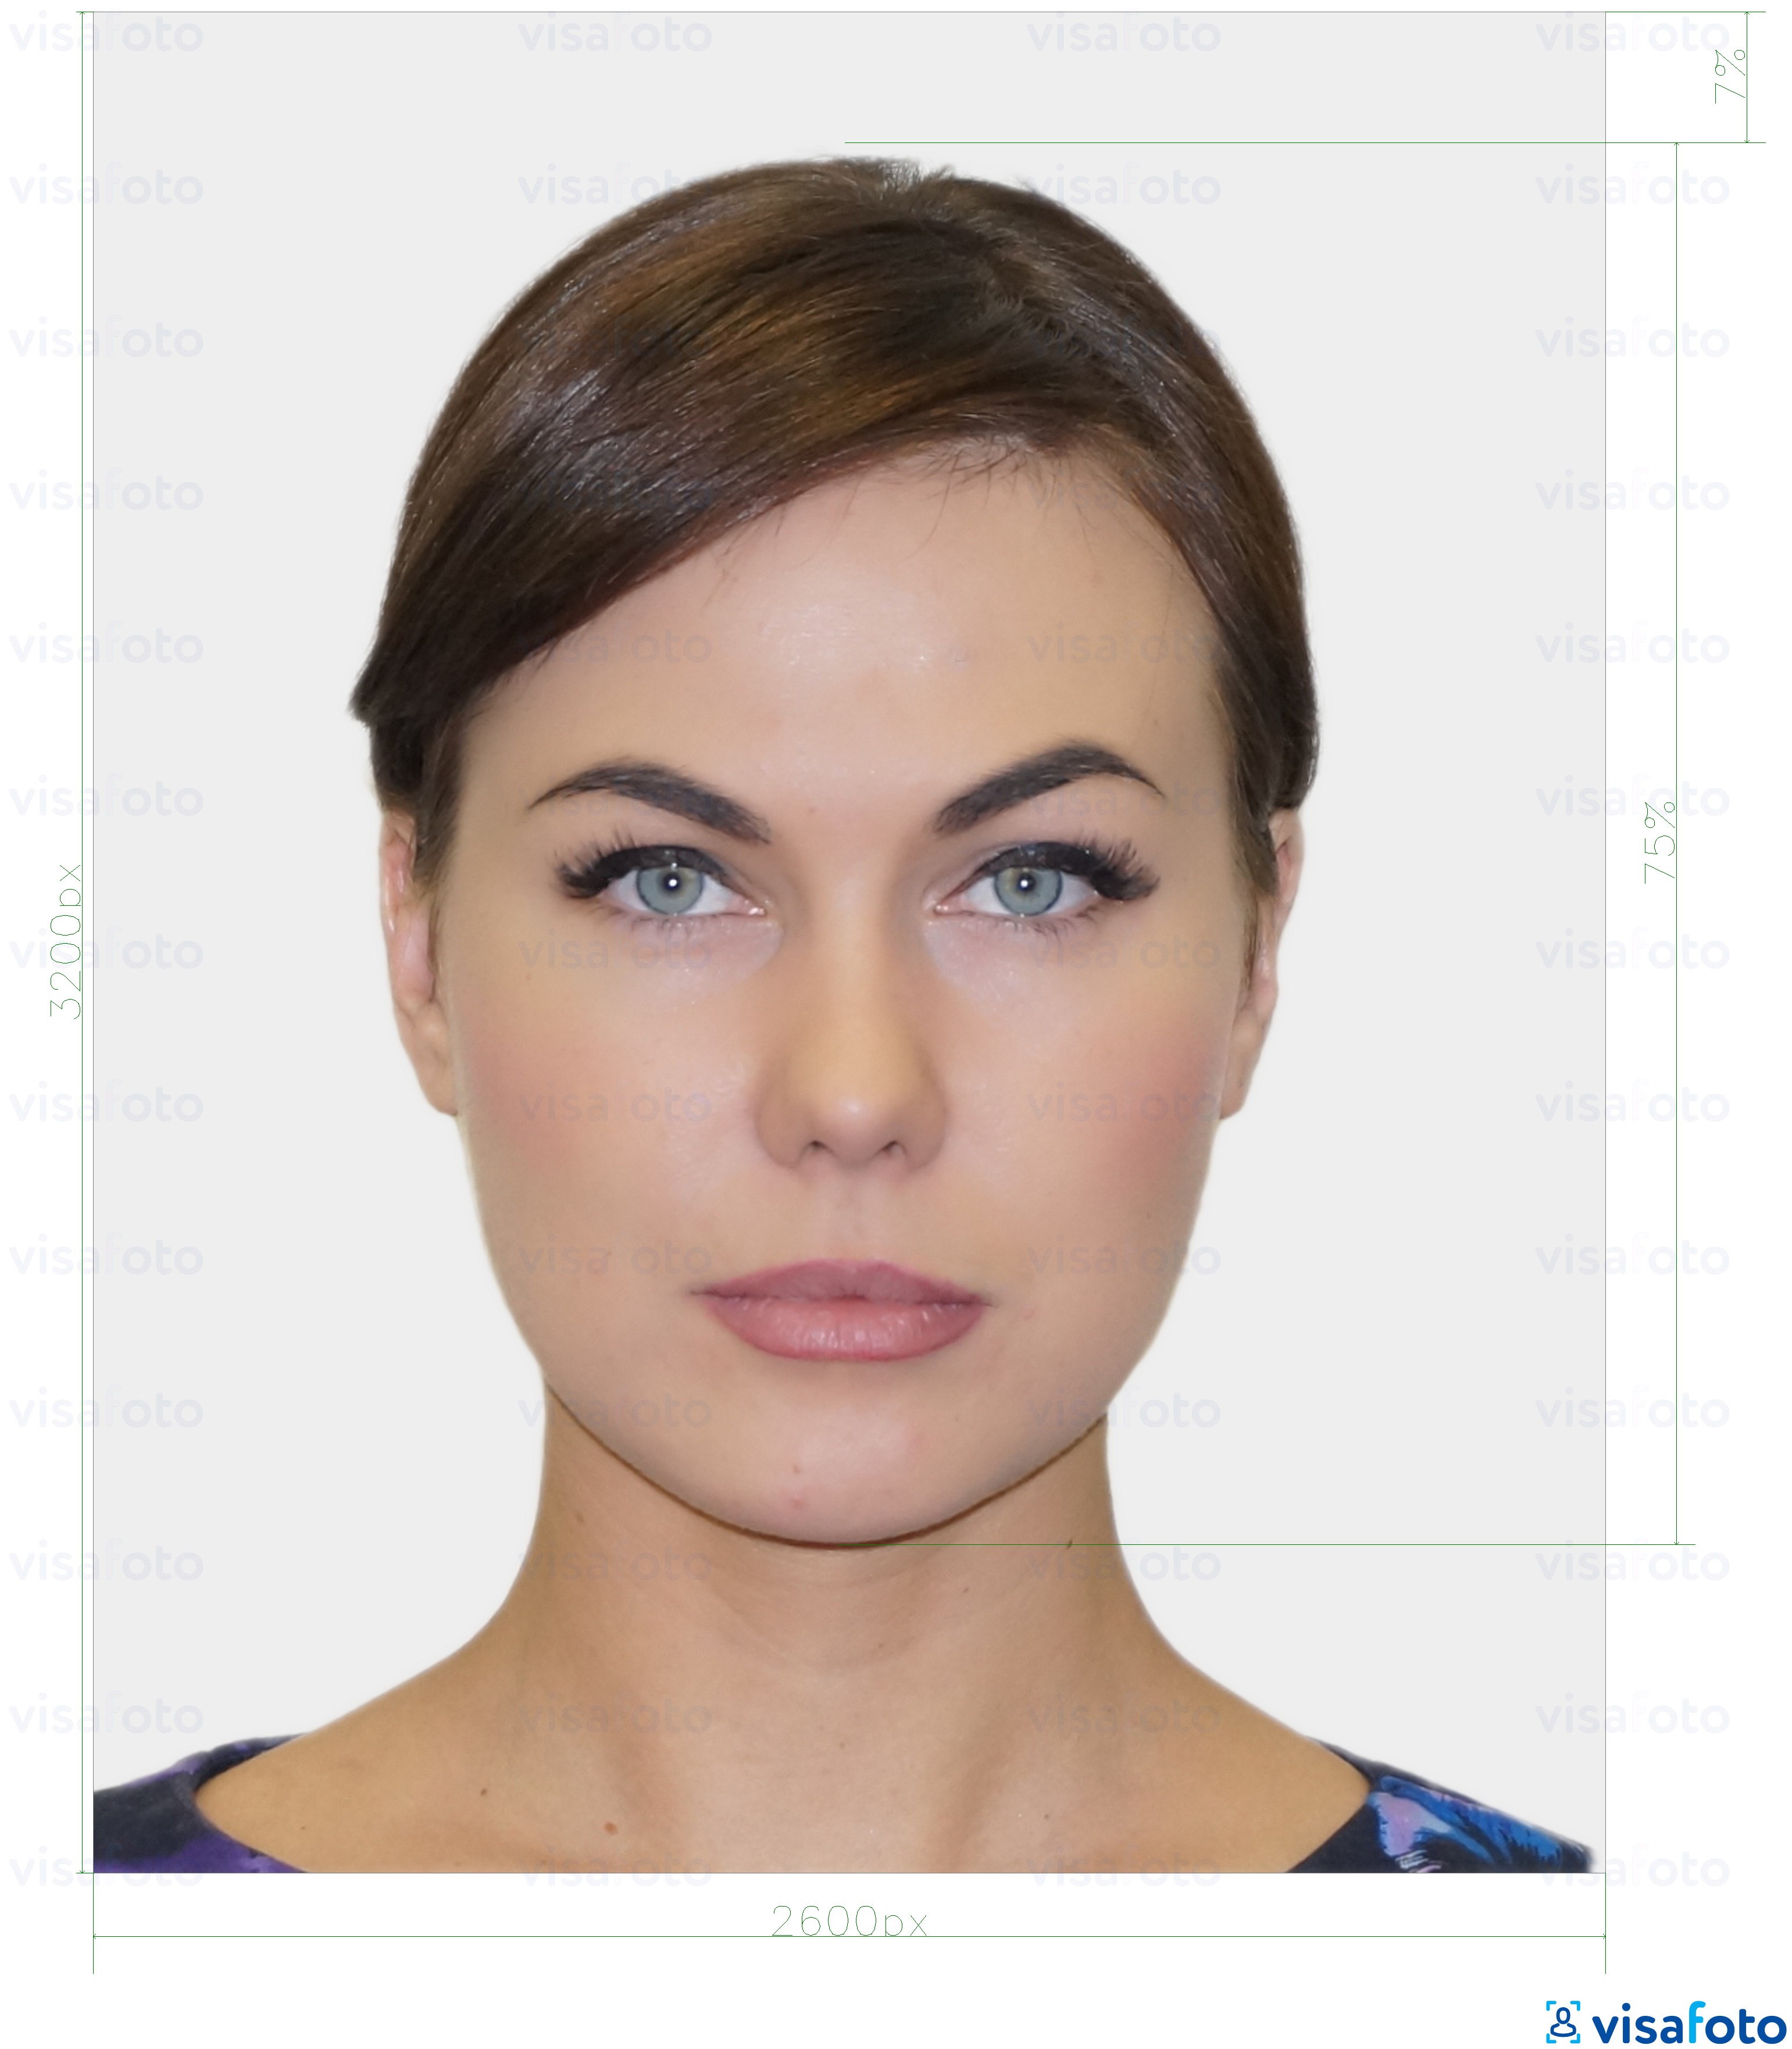 Contoh dari foto untuk Warga Estonia kartu identitas digital 1300x1600 piksel dengan ukuran spesifikasi yang tepat